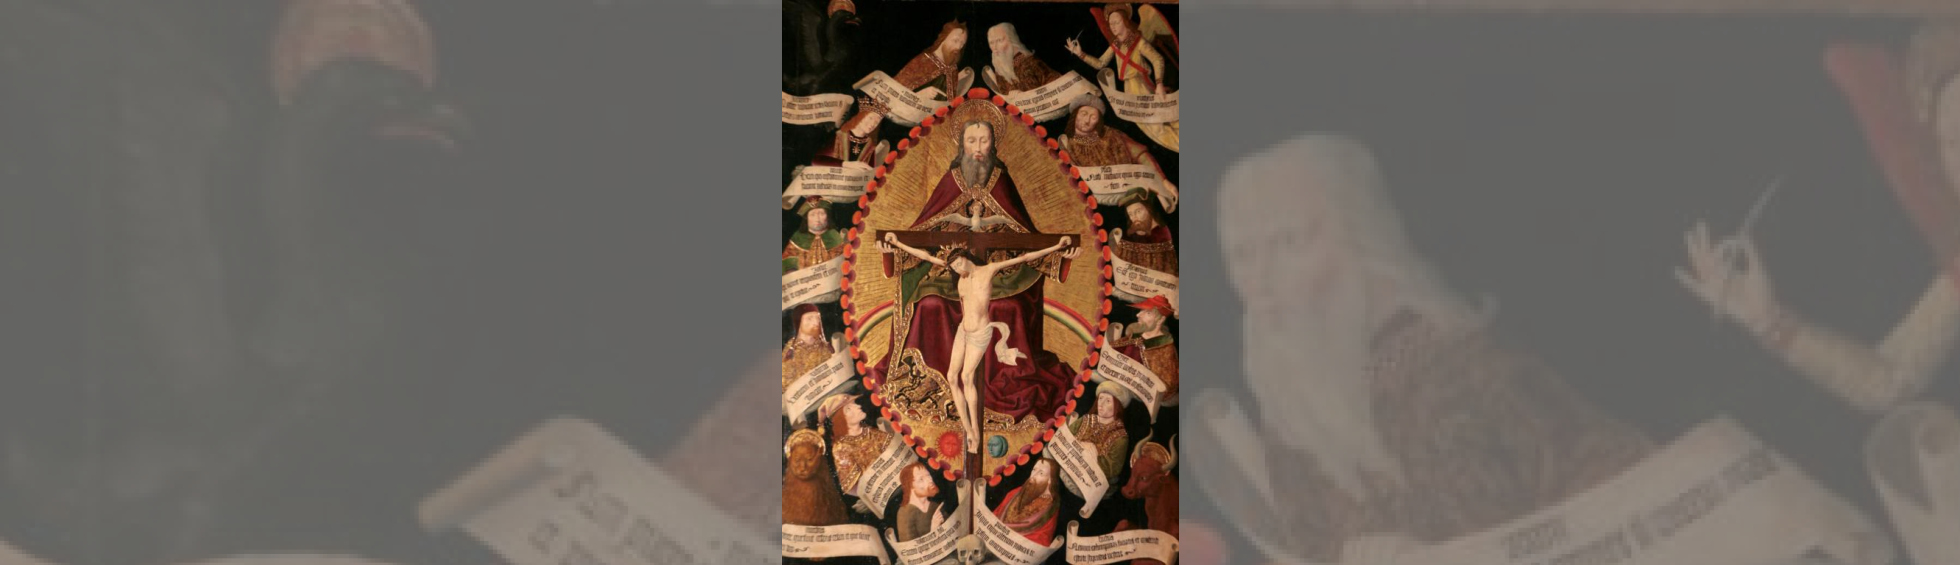 Retable de la Trinité 1489 :Dieu tient  la croix et Jesus cruxifié; la colombe de l'esprit saint posée sur le haut de la croix